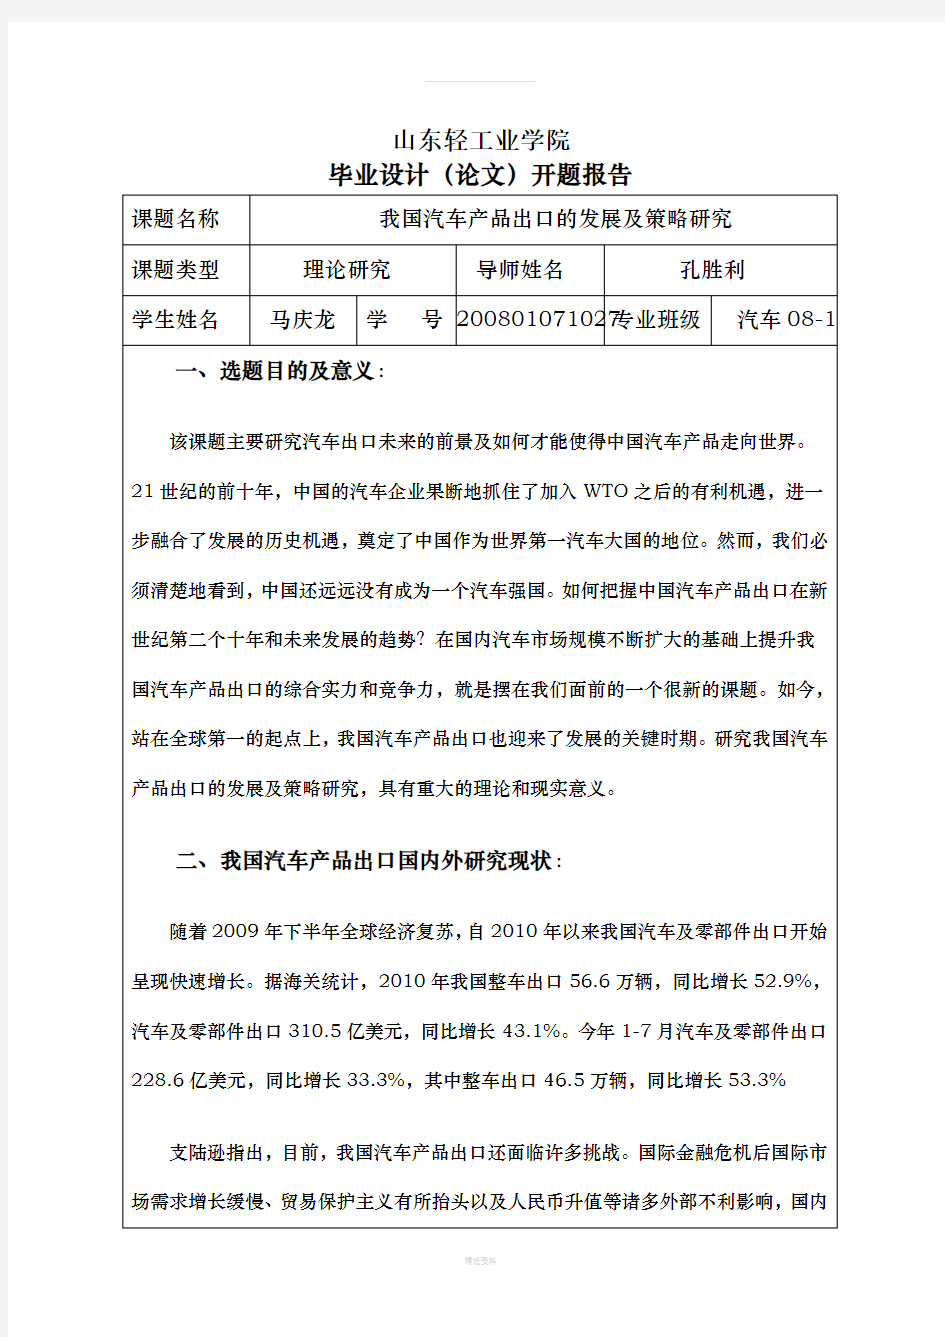 中国汽车出口现状及策略研究-毕业论文开题报告